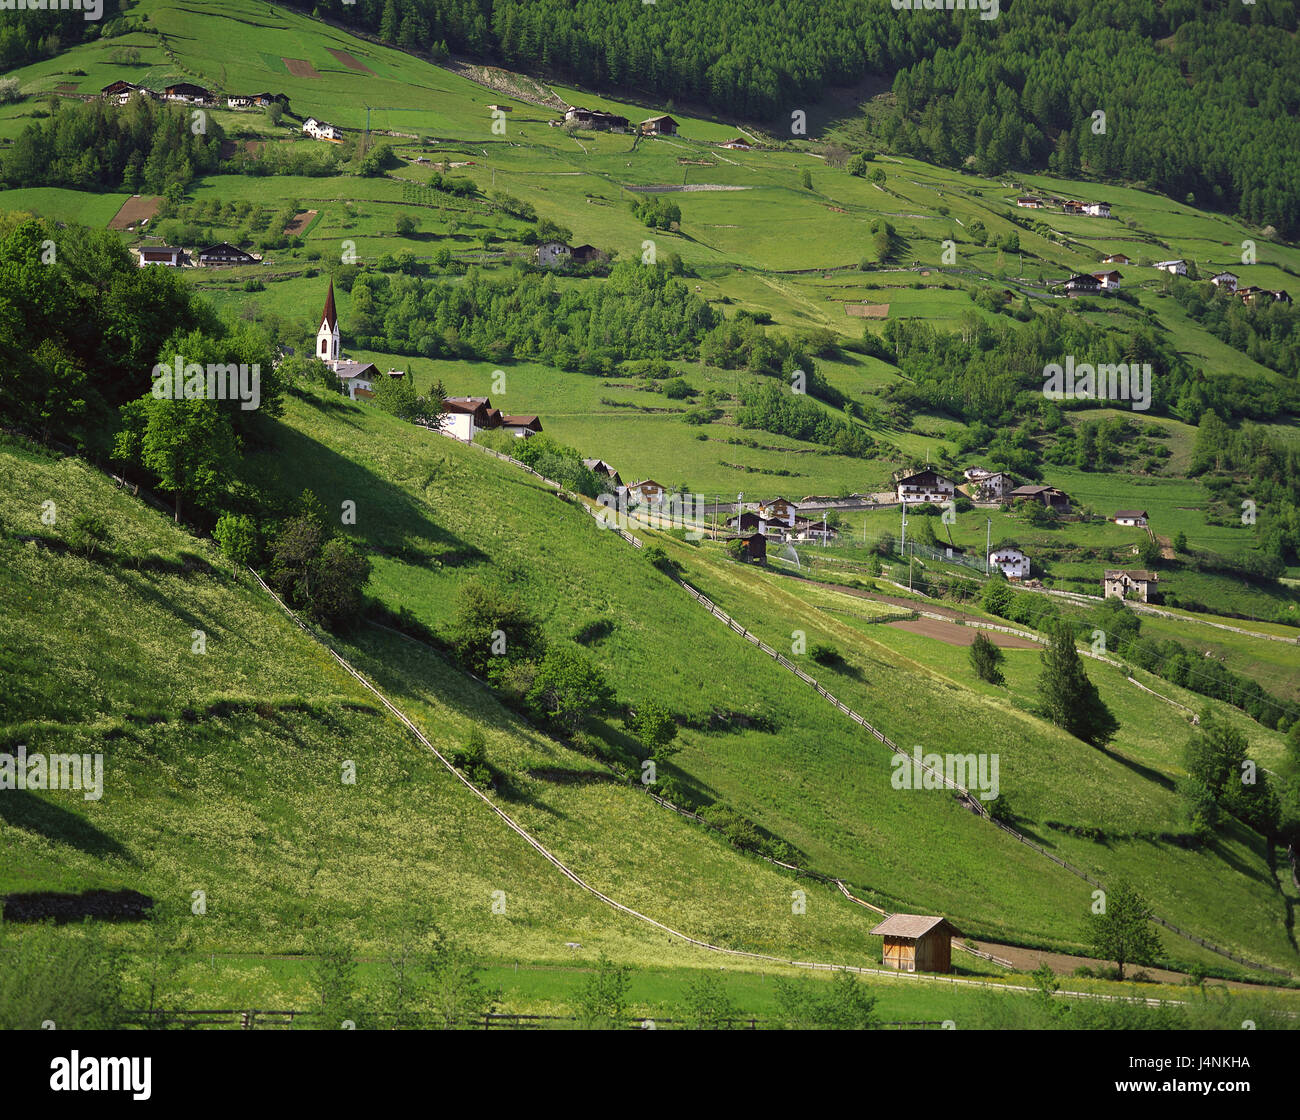 Italia, el Tirol meridional, Martelltal, ver paisajes, campos, prados, lugares, lugares, pueblos, iglesias, casas, árboles, bosques, verde Foto de stock